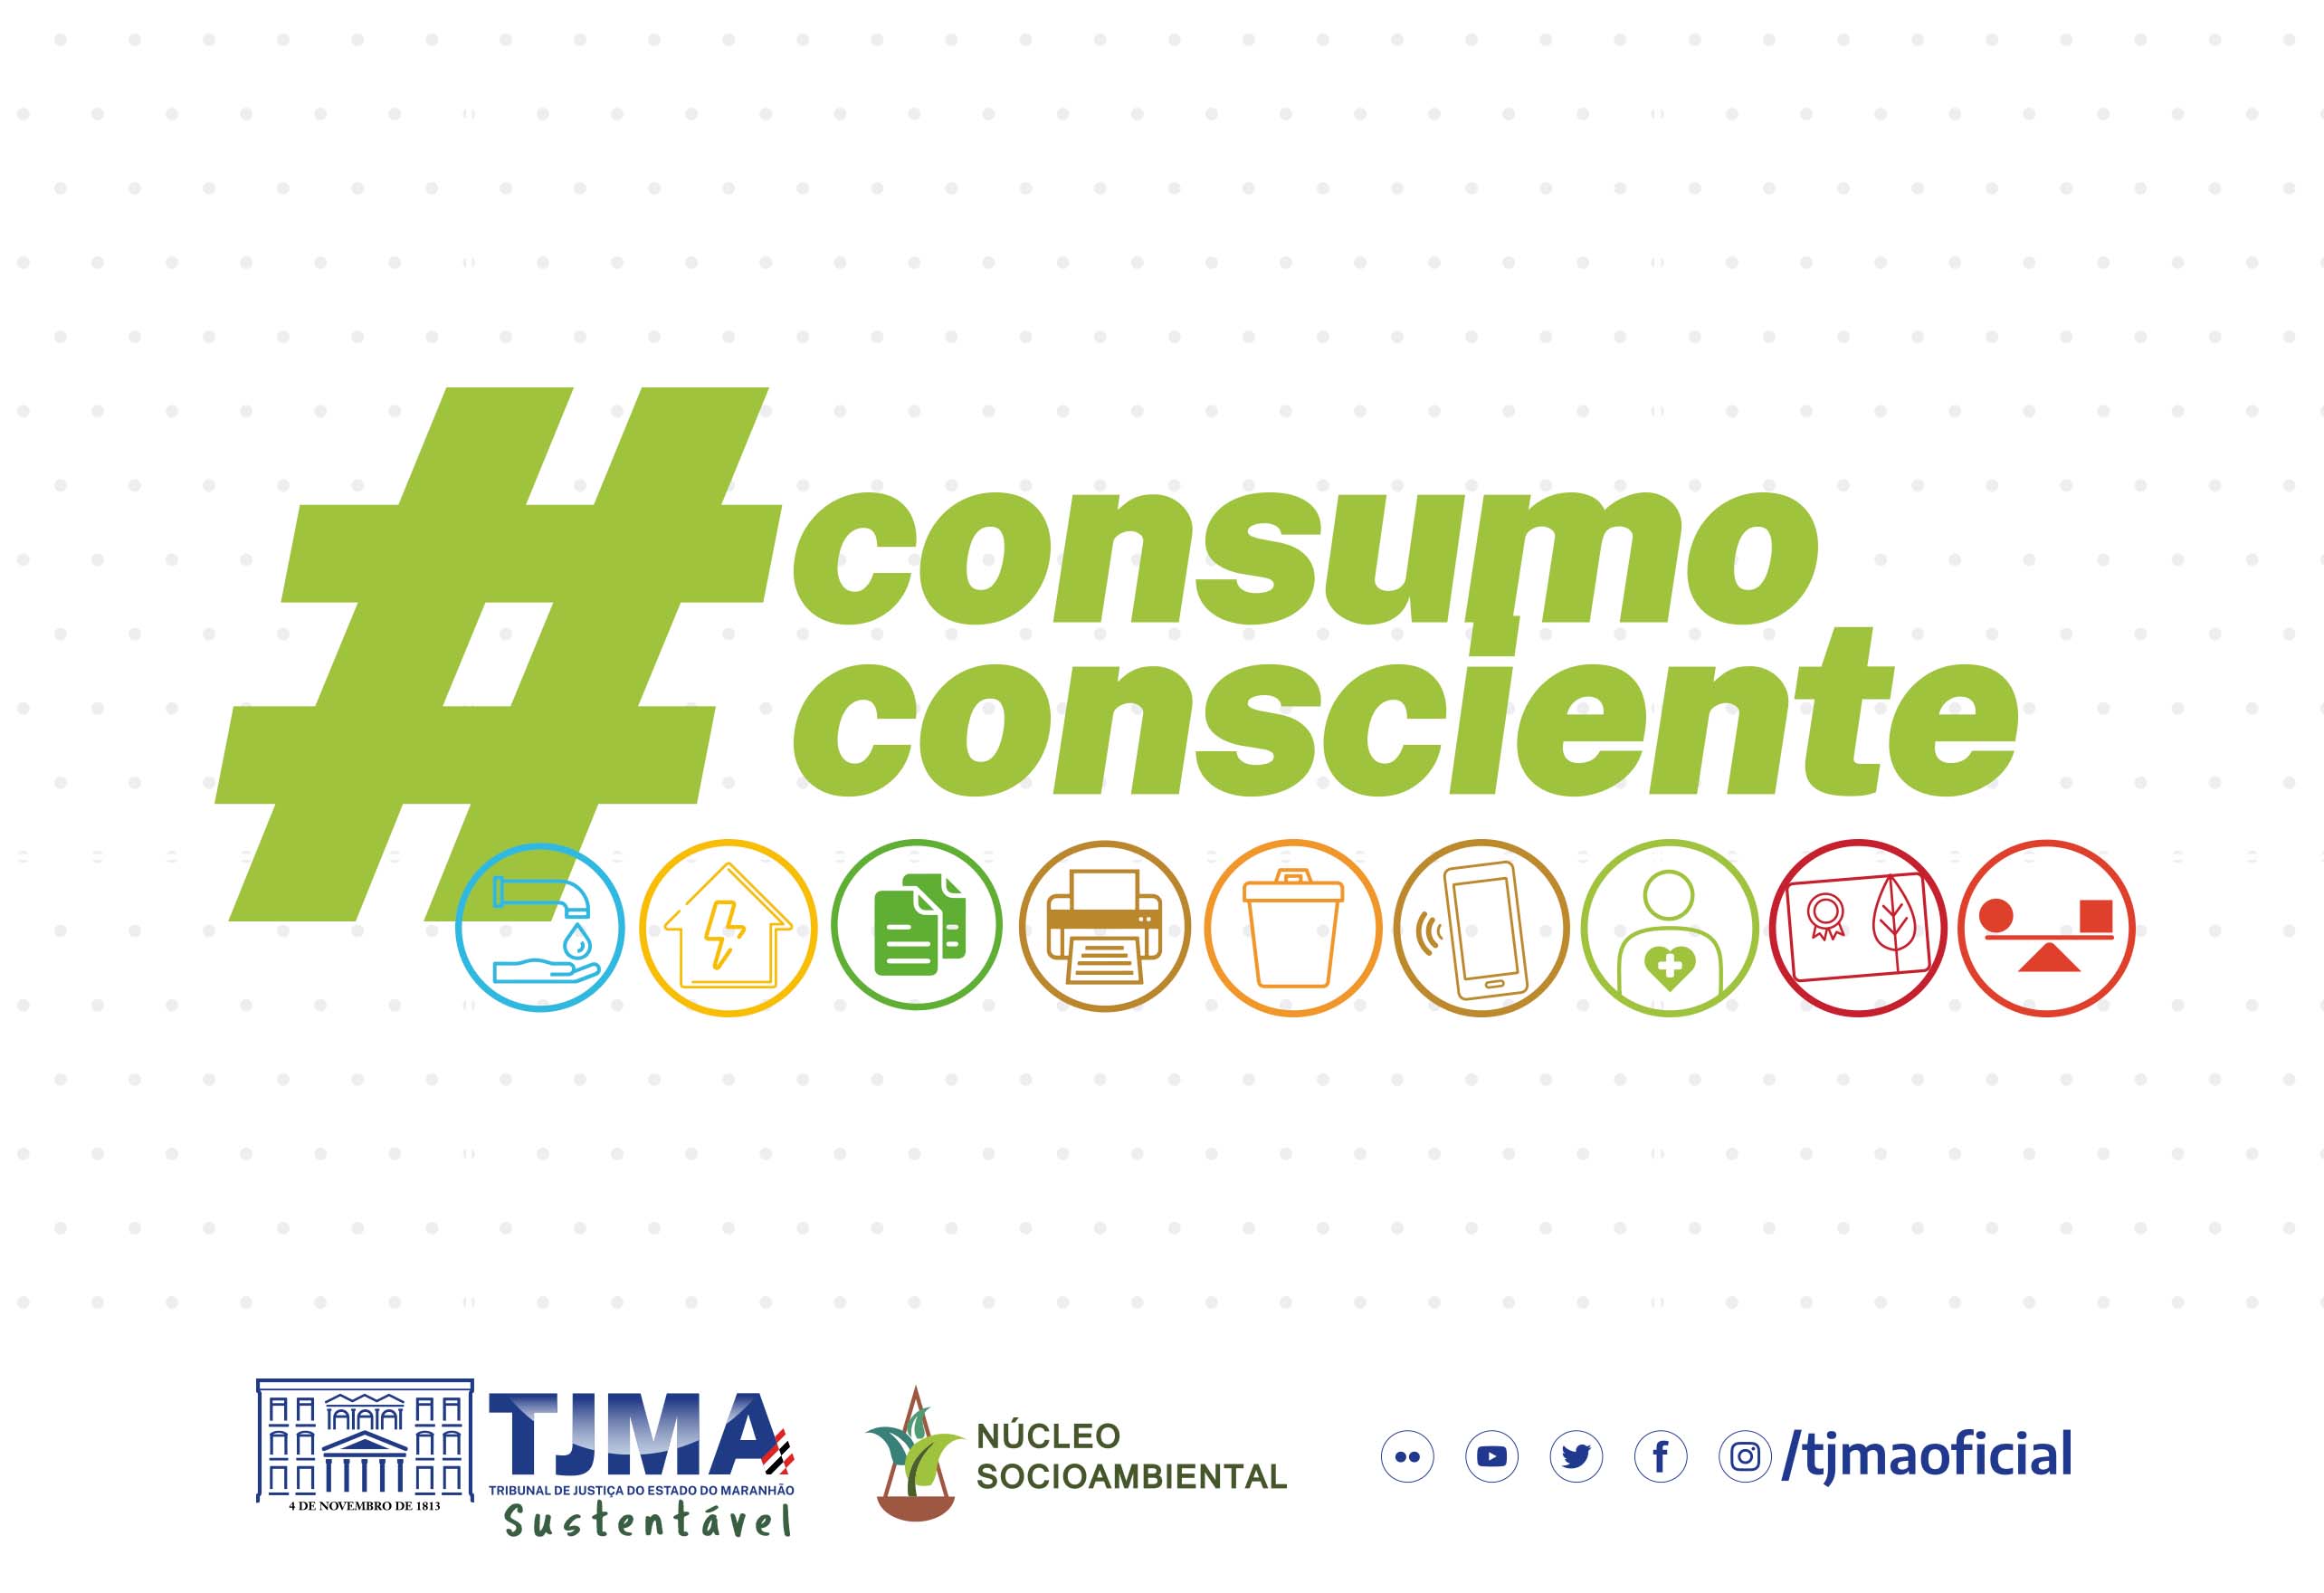 Card colorido. Texto em verde #ConsumoConsciente.